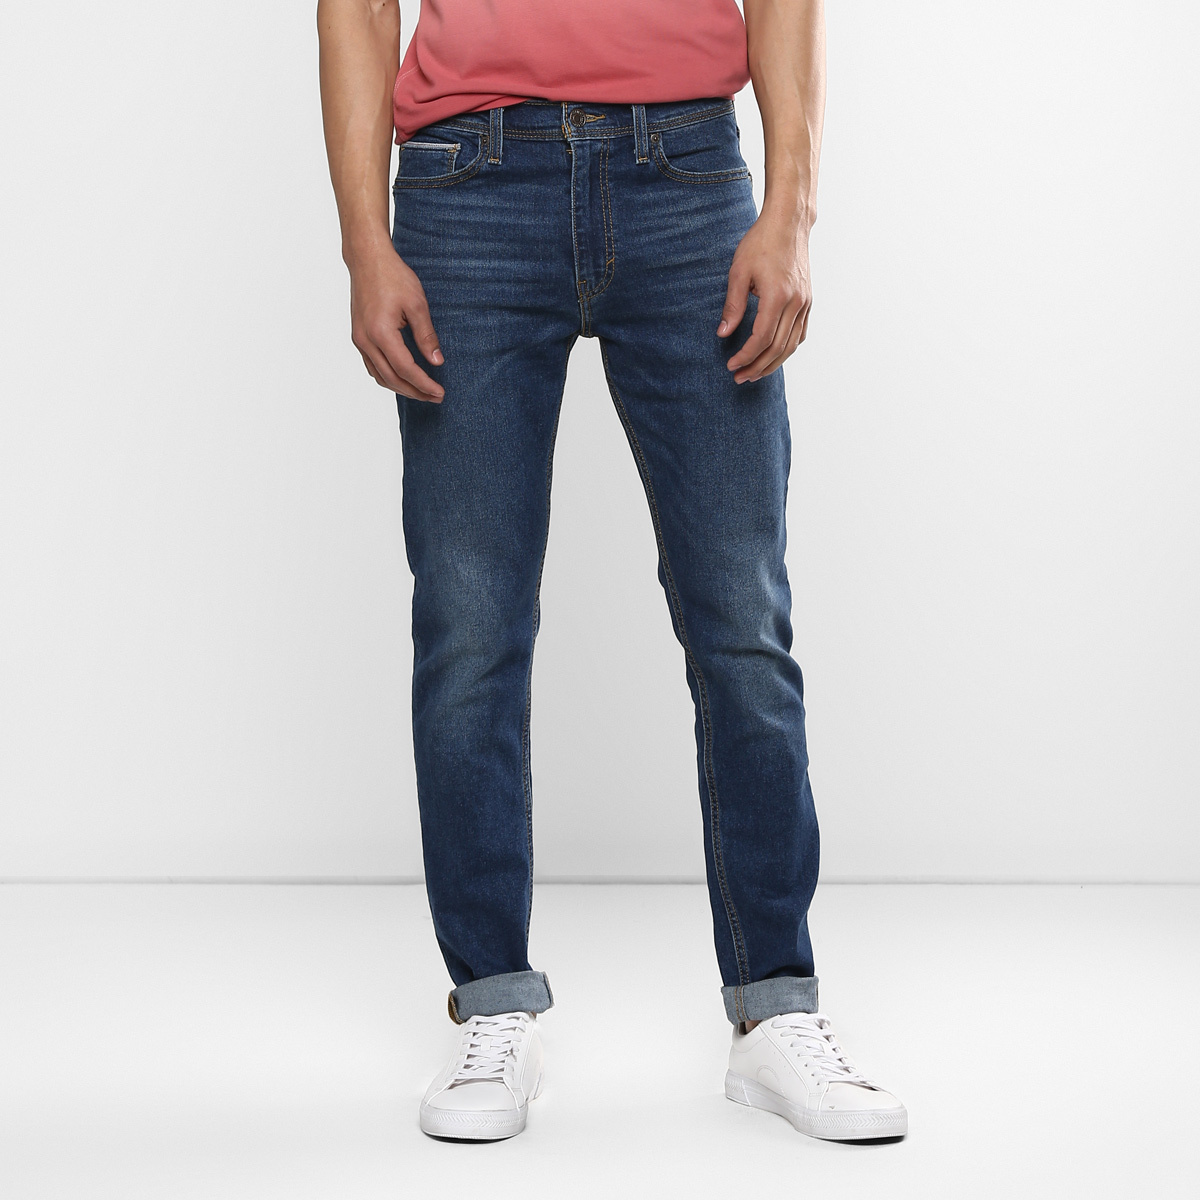 LEVIS MEN Single Length Jeans 86674-0001 Blue 34